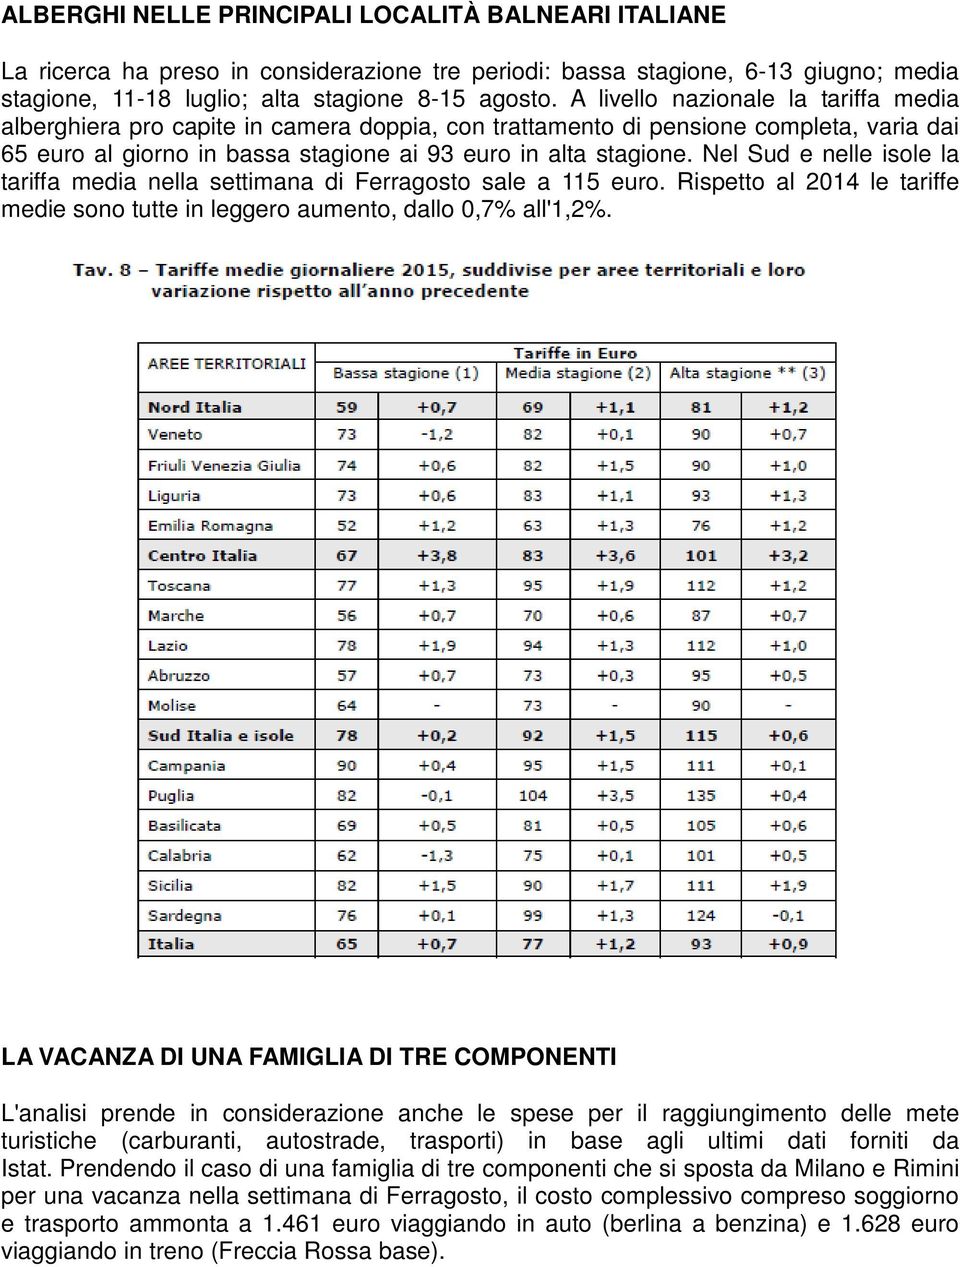 Nel Sud e nelle isole la tariffa media nella settimana di Ferragosto sale a 115 euro. Rispetto al 2014 le tariffe medie sono tutte in leggero aumento, dallo 0,7% all'1,2%.